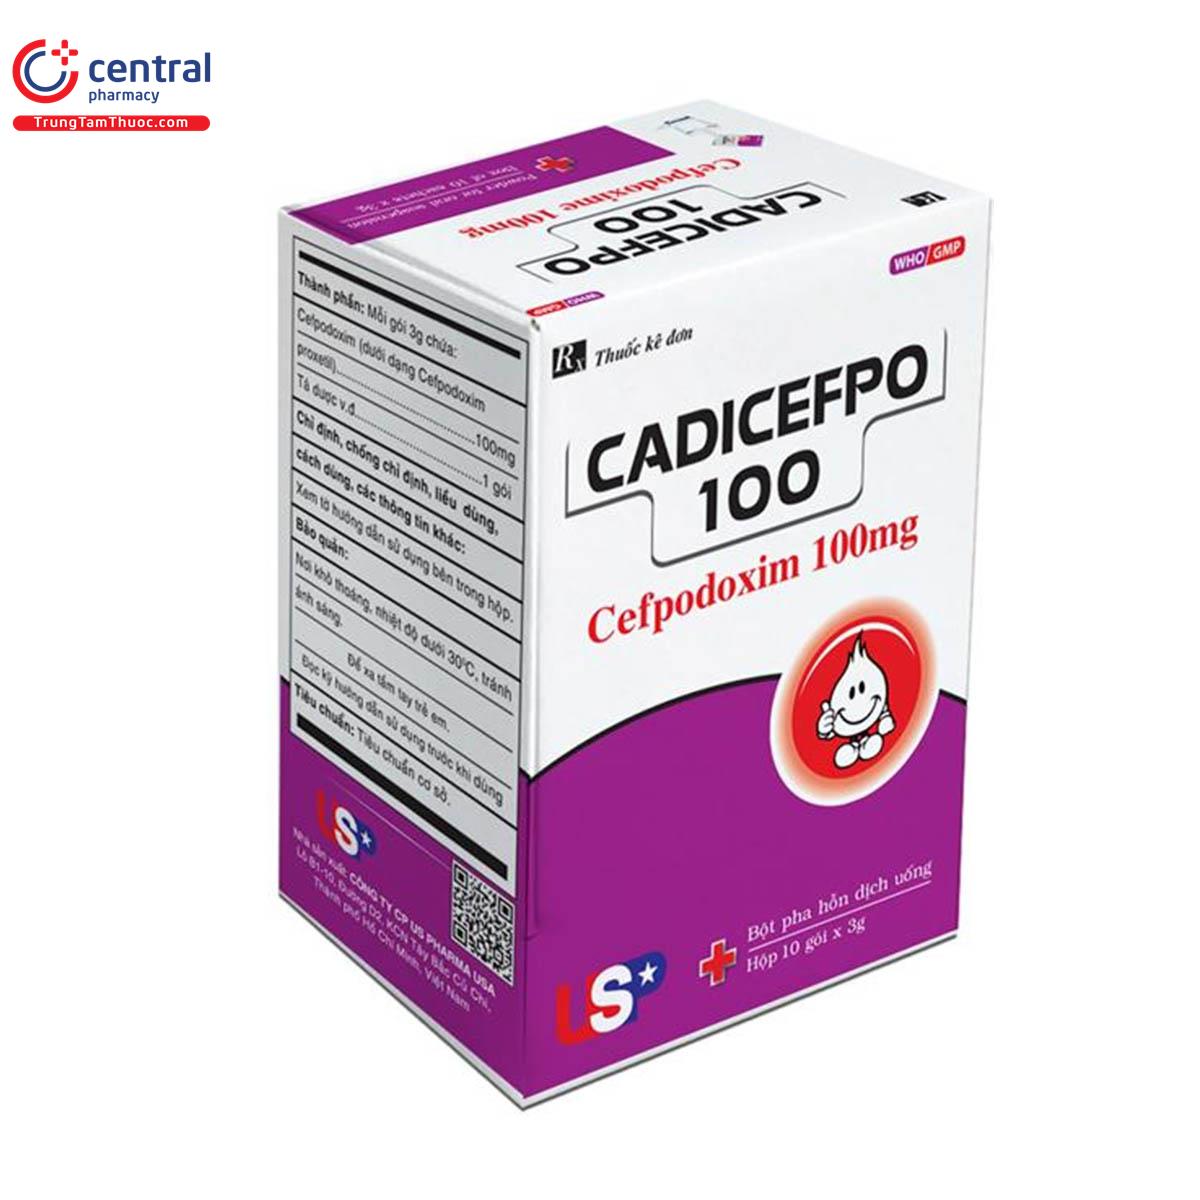 cadicefpo 100 us pharma 4 E1533